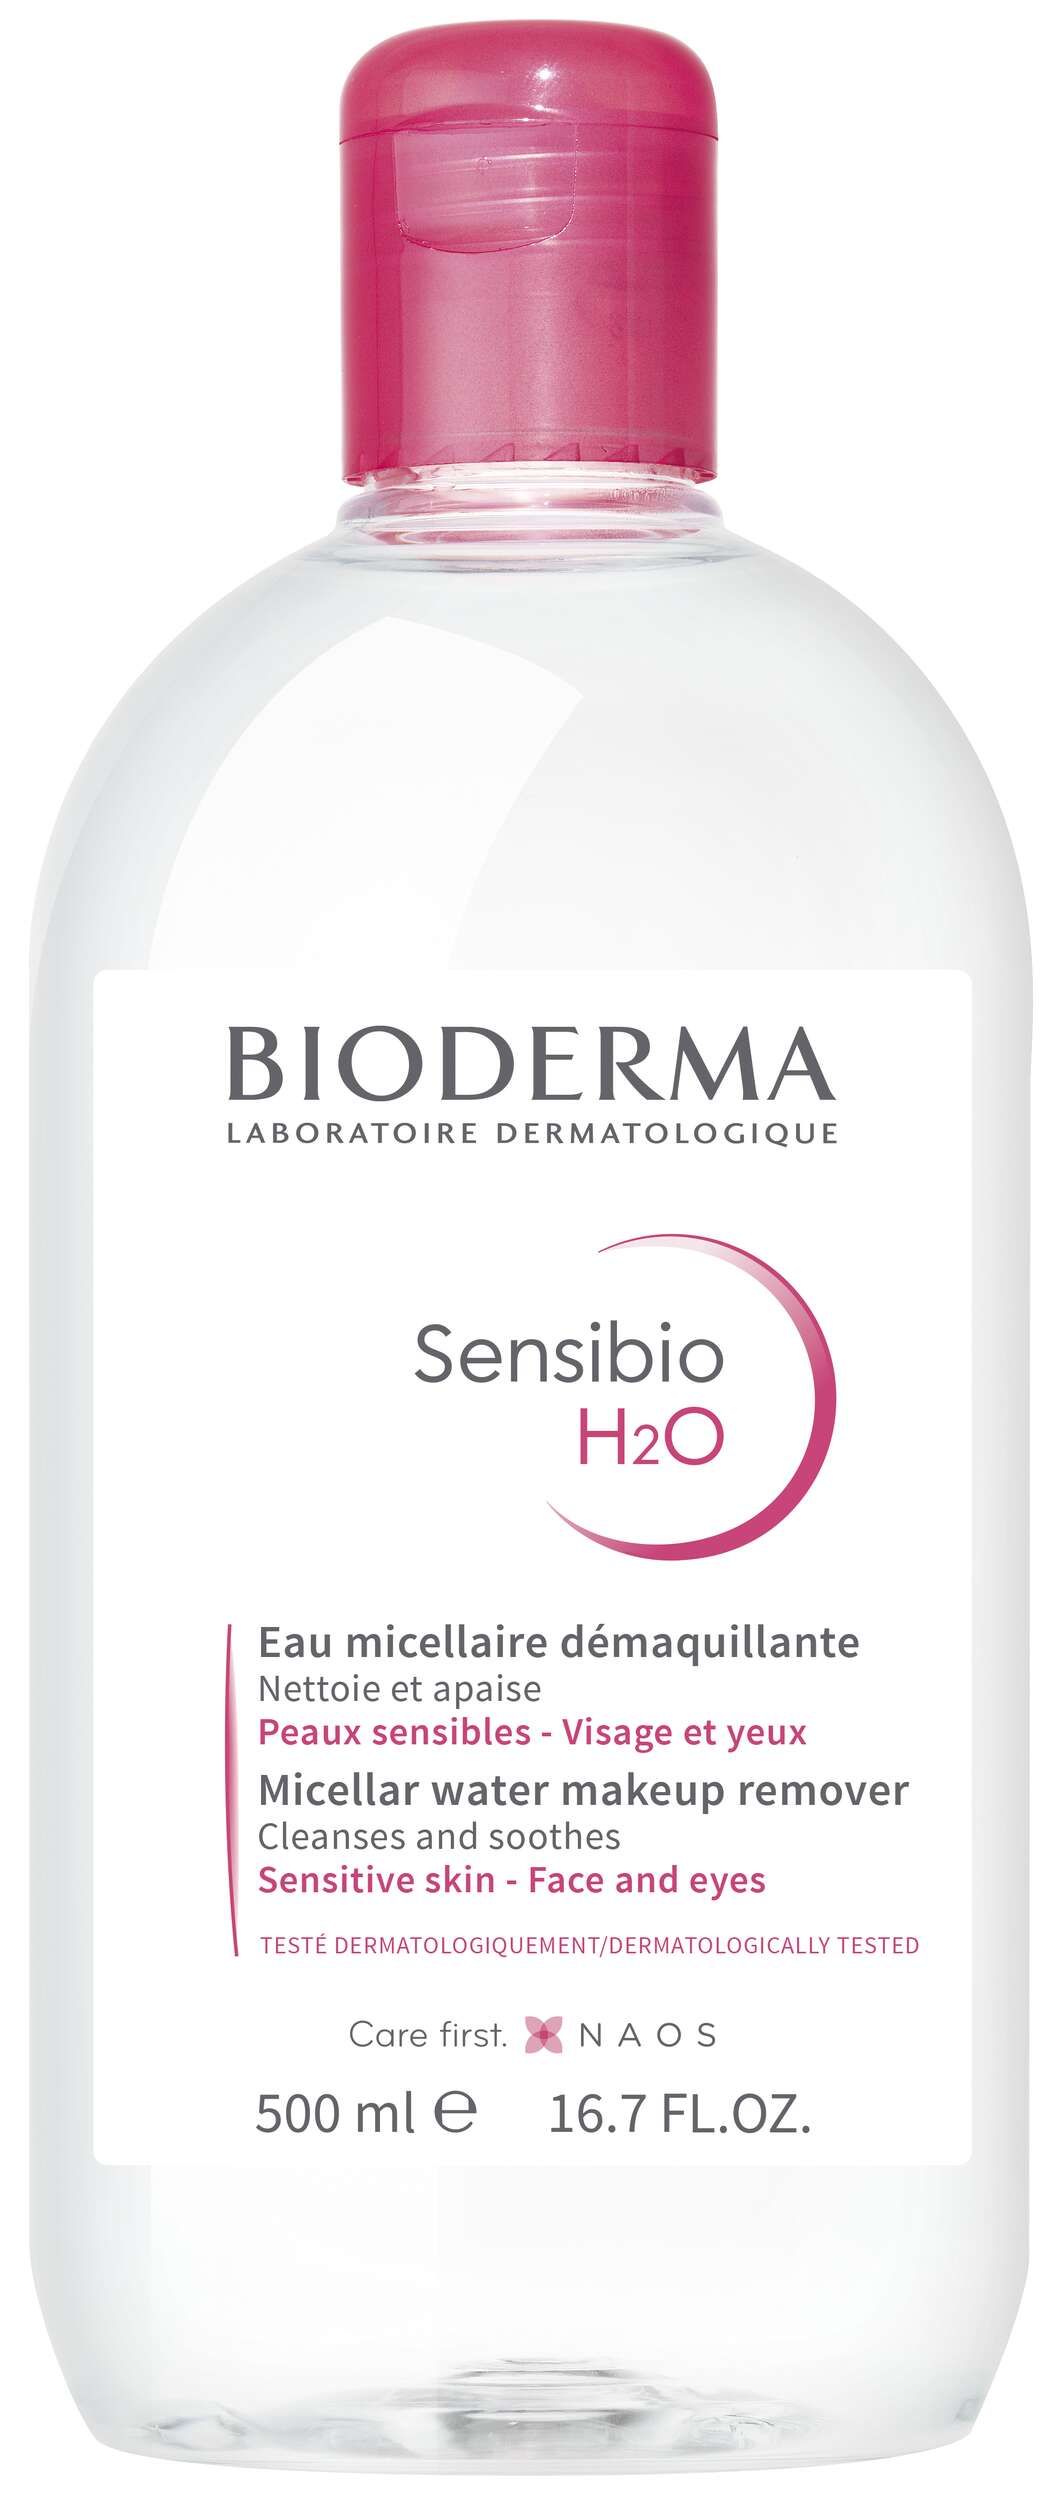 Bioderma Sensibio H2o Acqua Micellare Struccante 500ml - Top